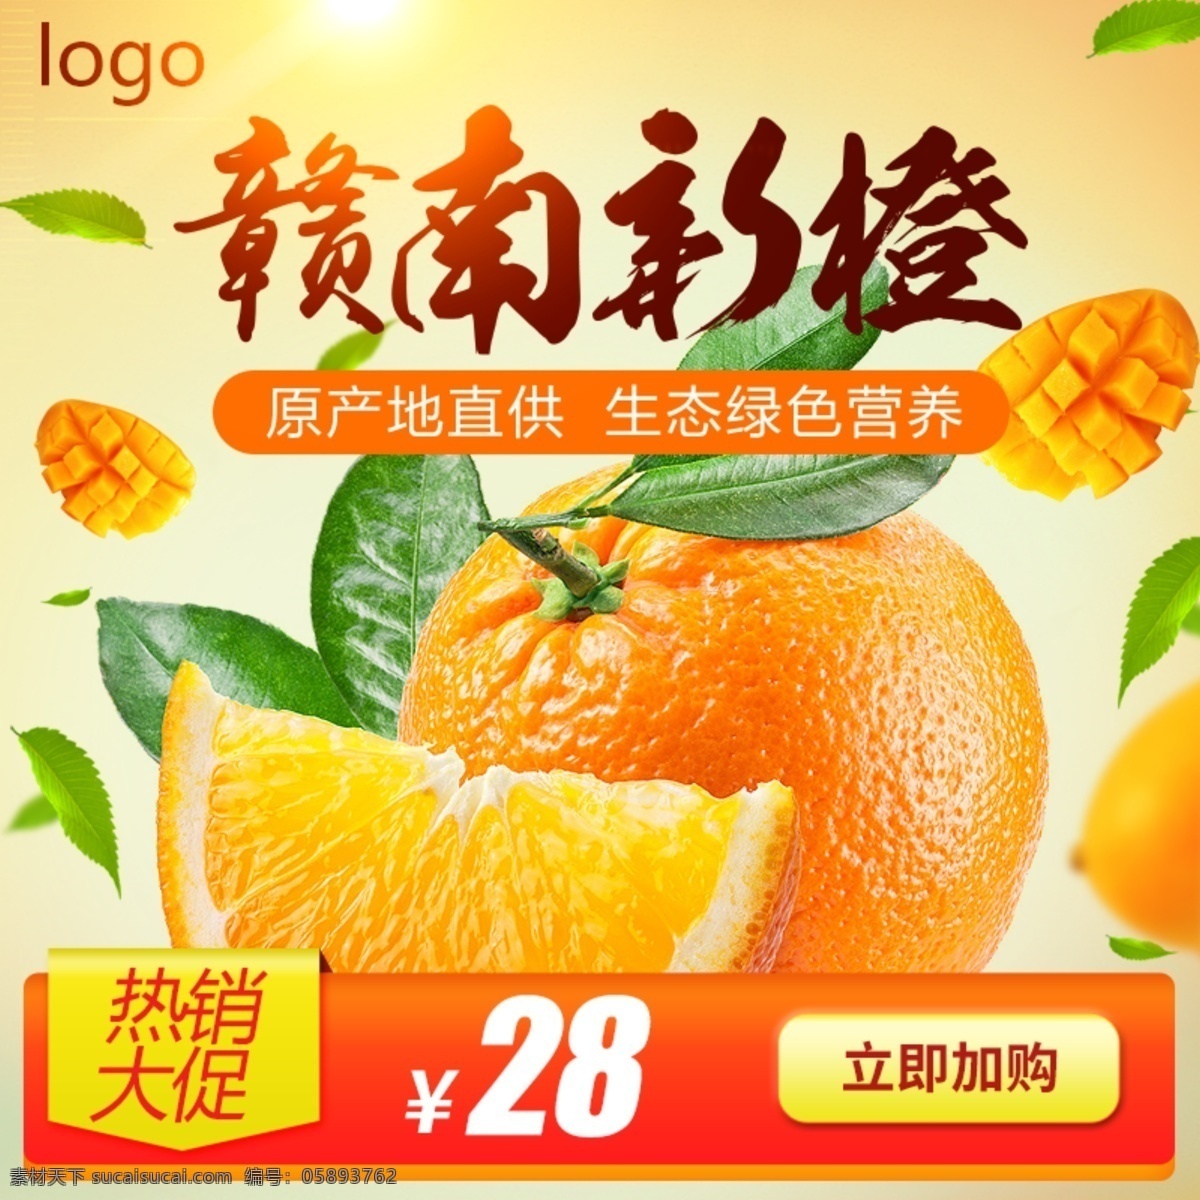 新鲜 水果 绿色 健康 新 橙 主 图 新鲜水果 橙子 美食 零食 进口澳橙 新橙